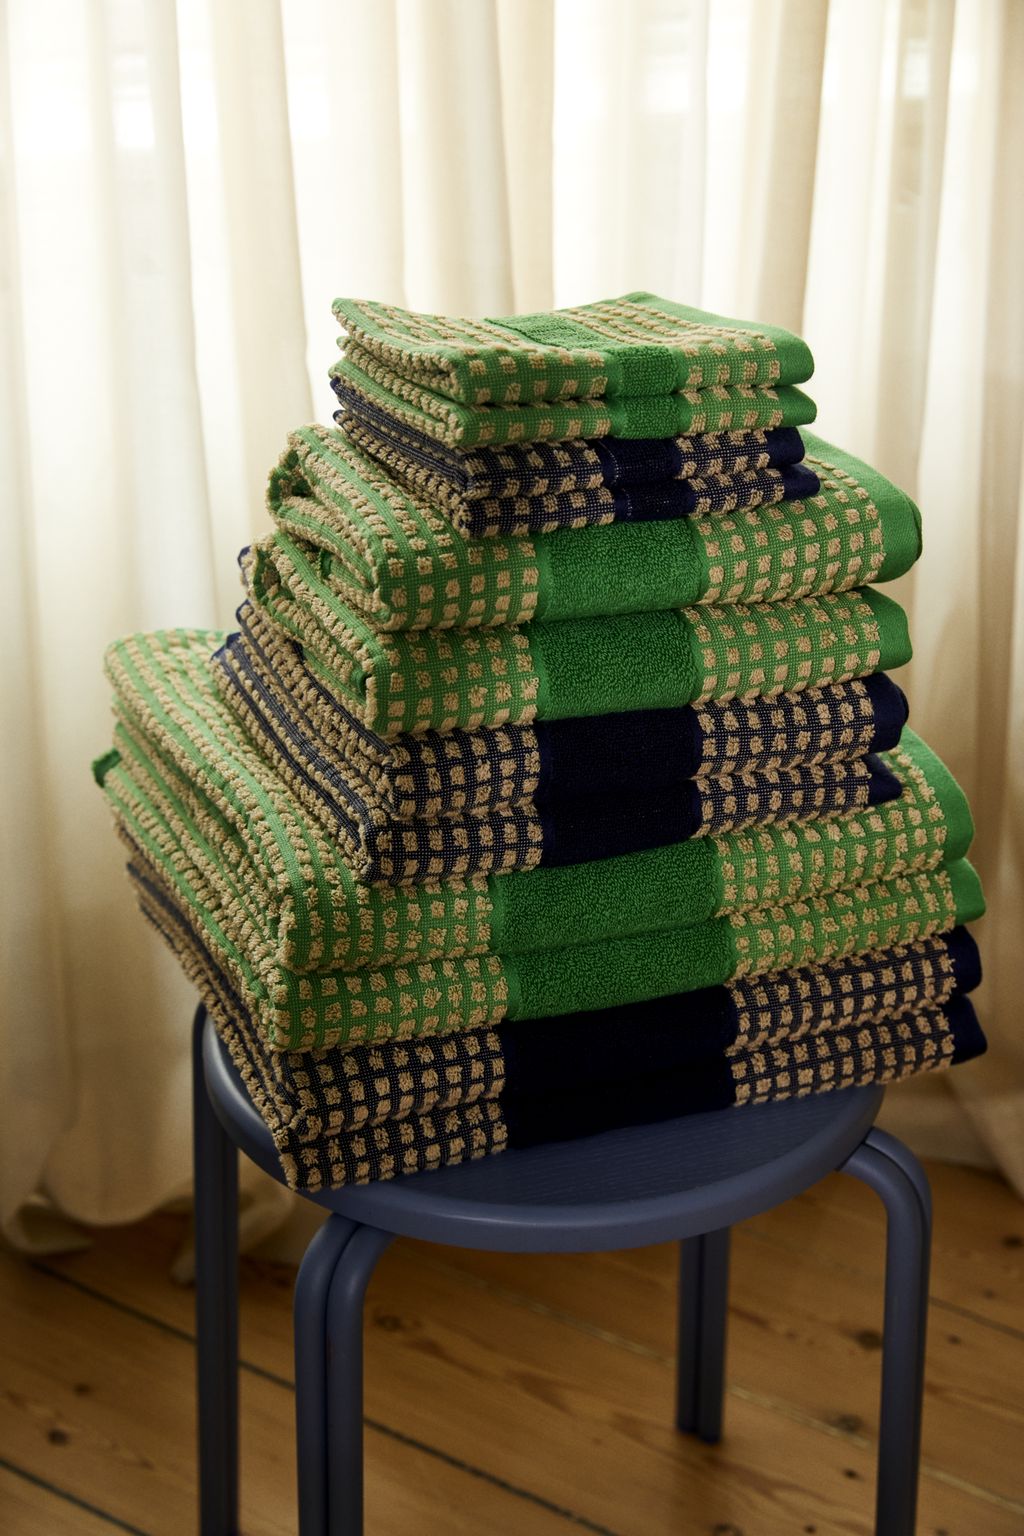 JUNA Kontroller håndklæde 70 x140 cm, grøn/beige